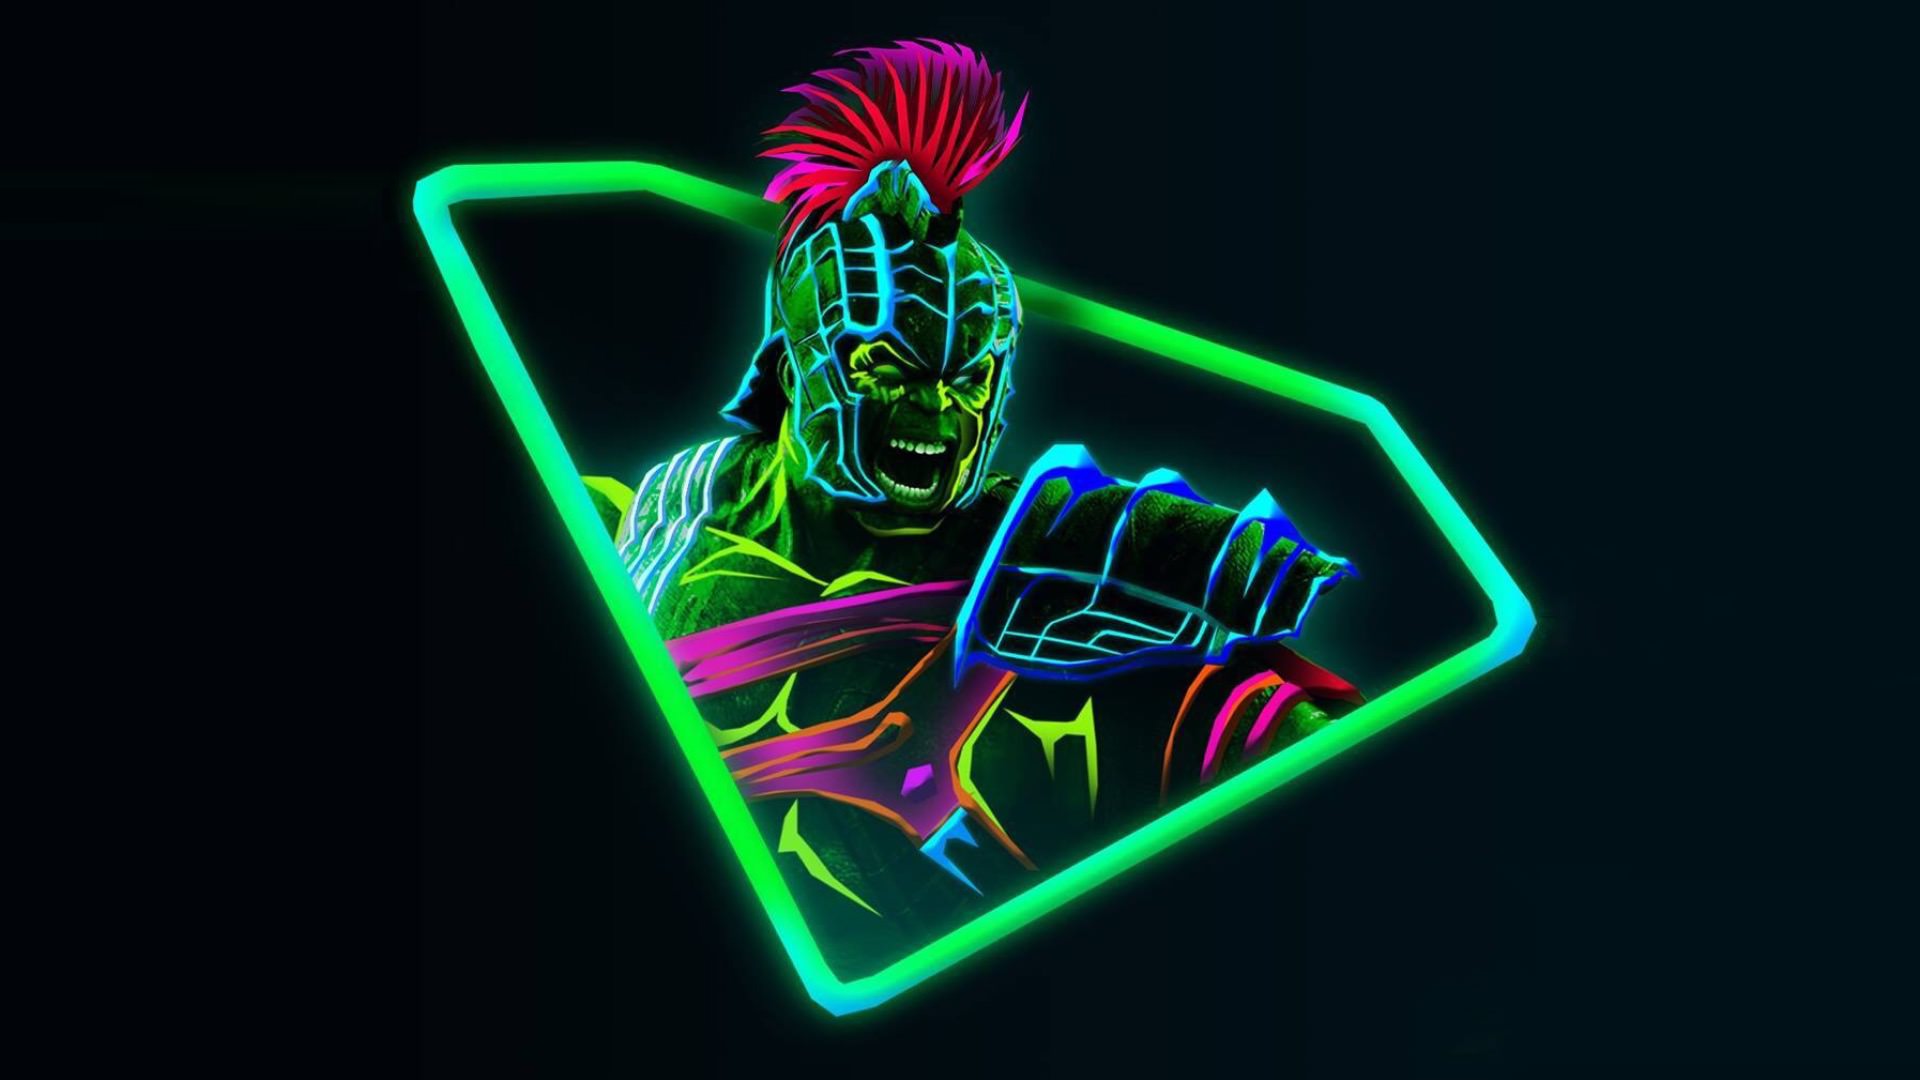 Neon Avengers Desktop Wallpaper Based On Artwork By